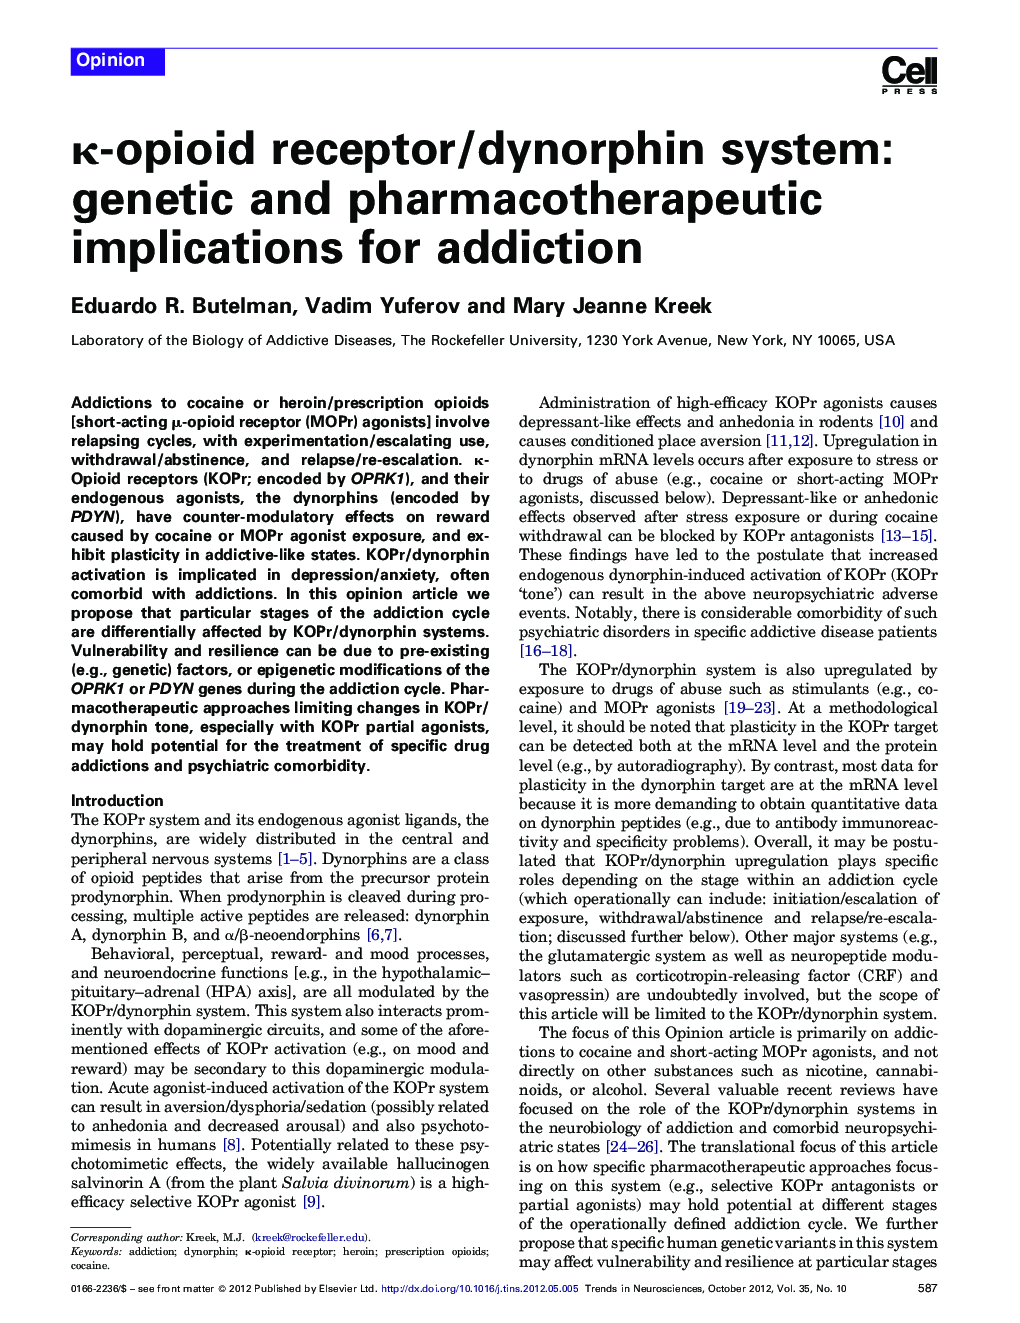 κ-opioid receptor/dynorphin system: genetic and pharmacotherapeutic implications for addiction